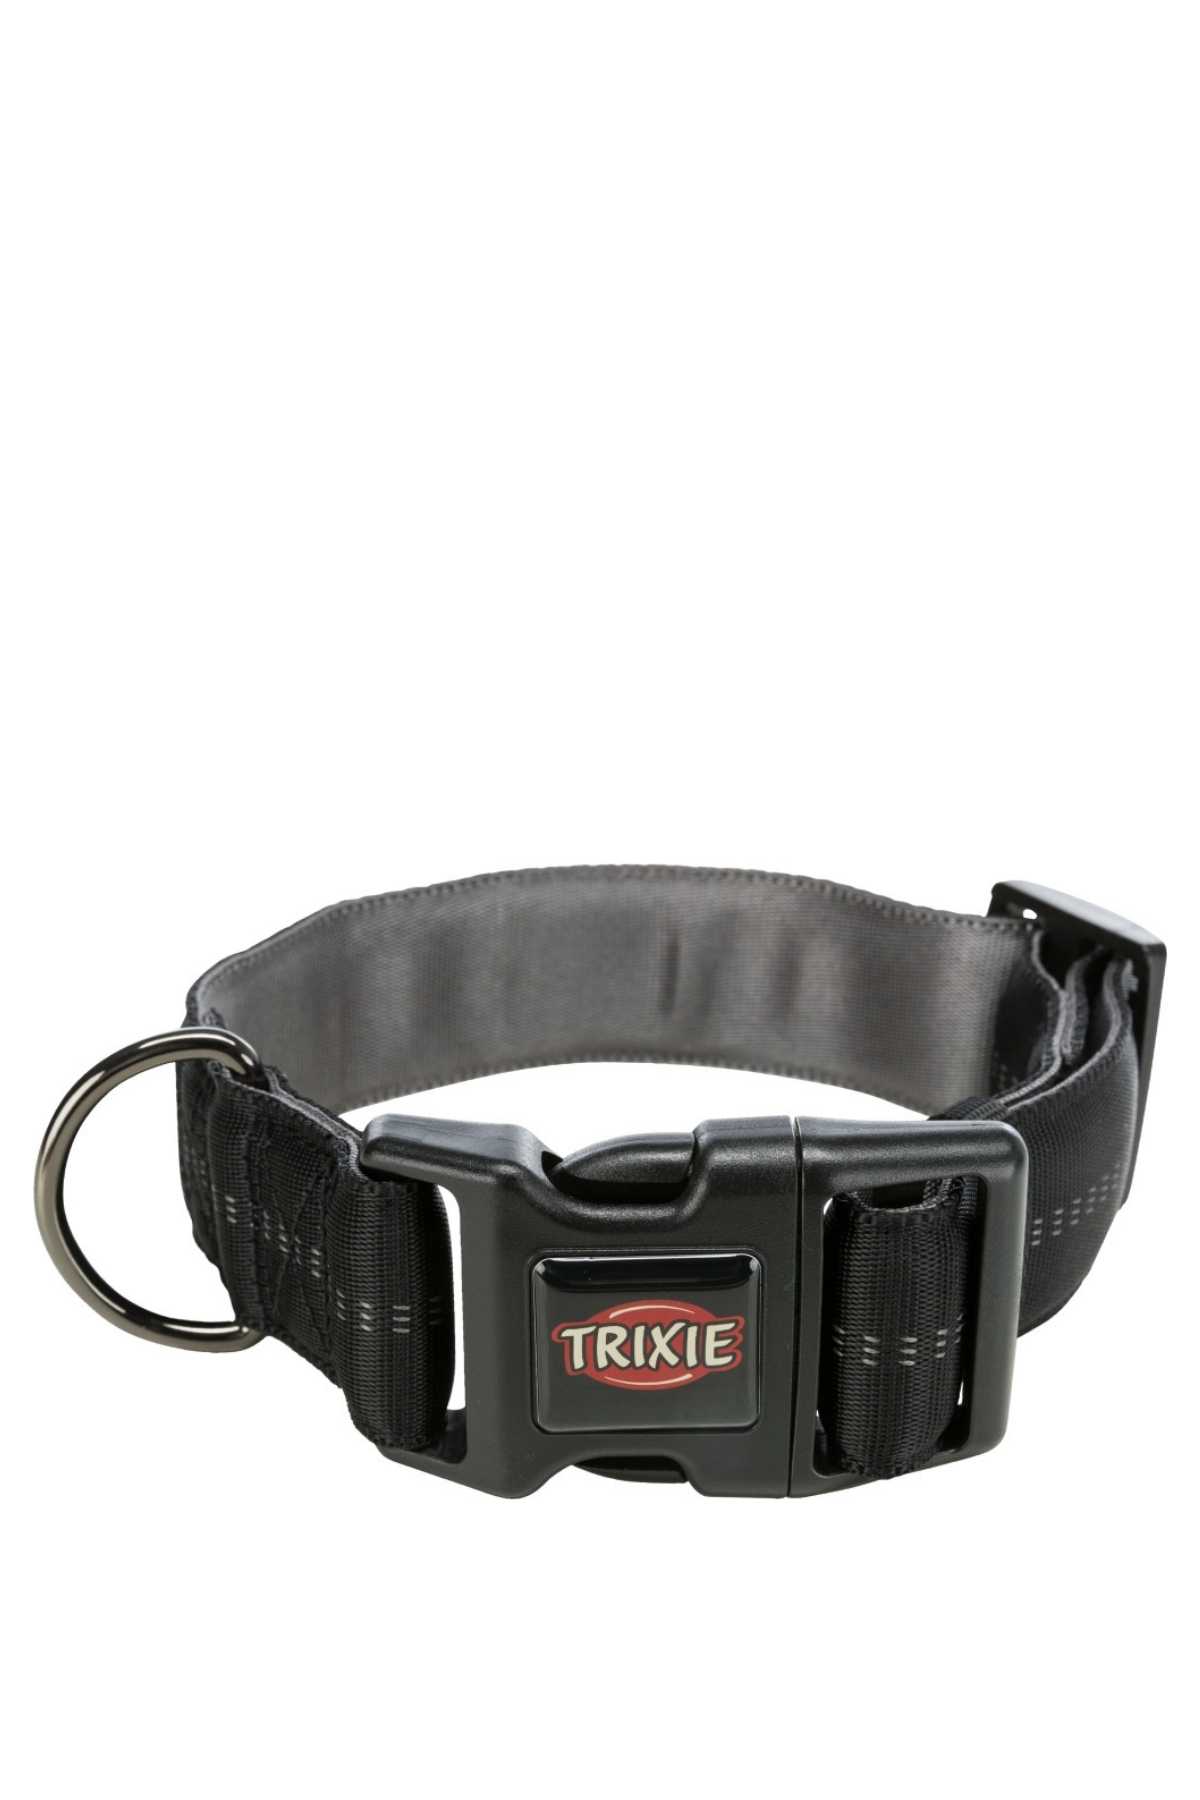 Trixie Ultra Grameniş Şık Yumuşak Yaka 55-70 CM /38 MM 